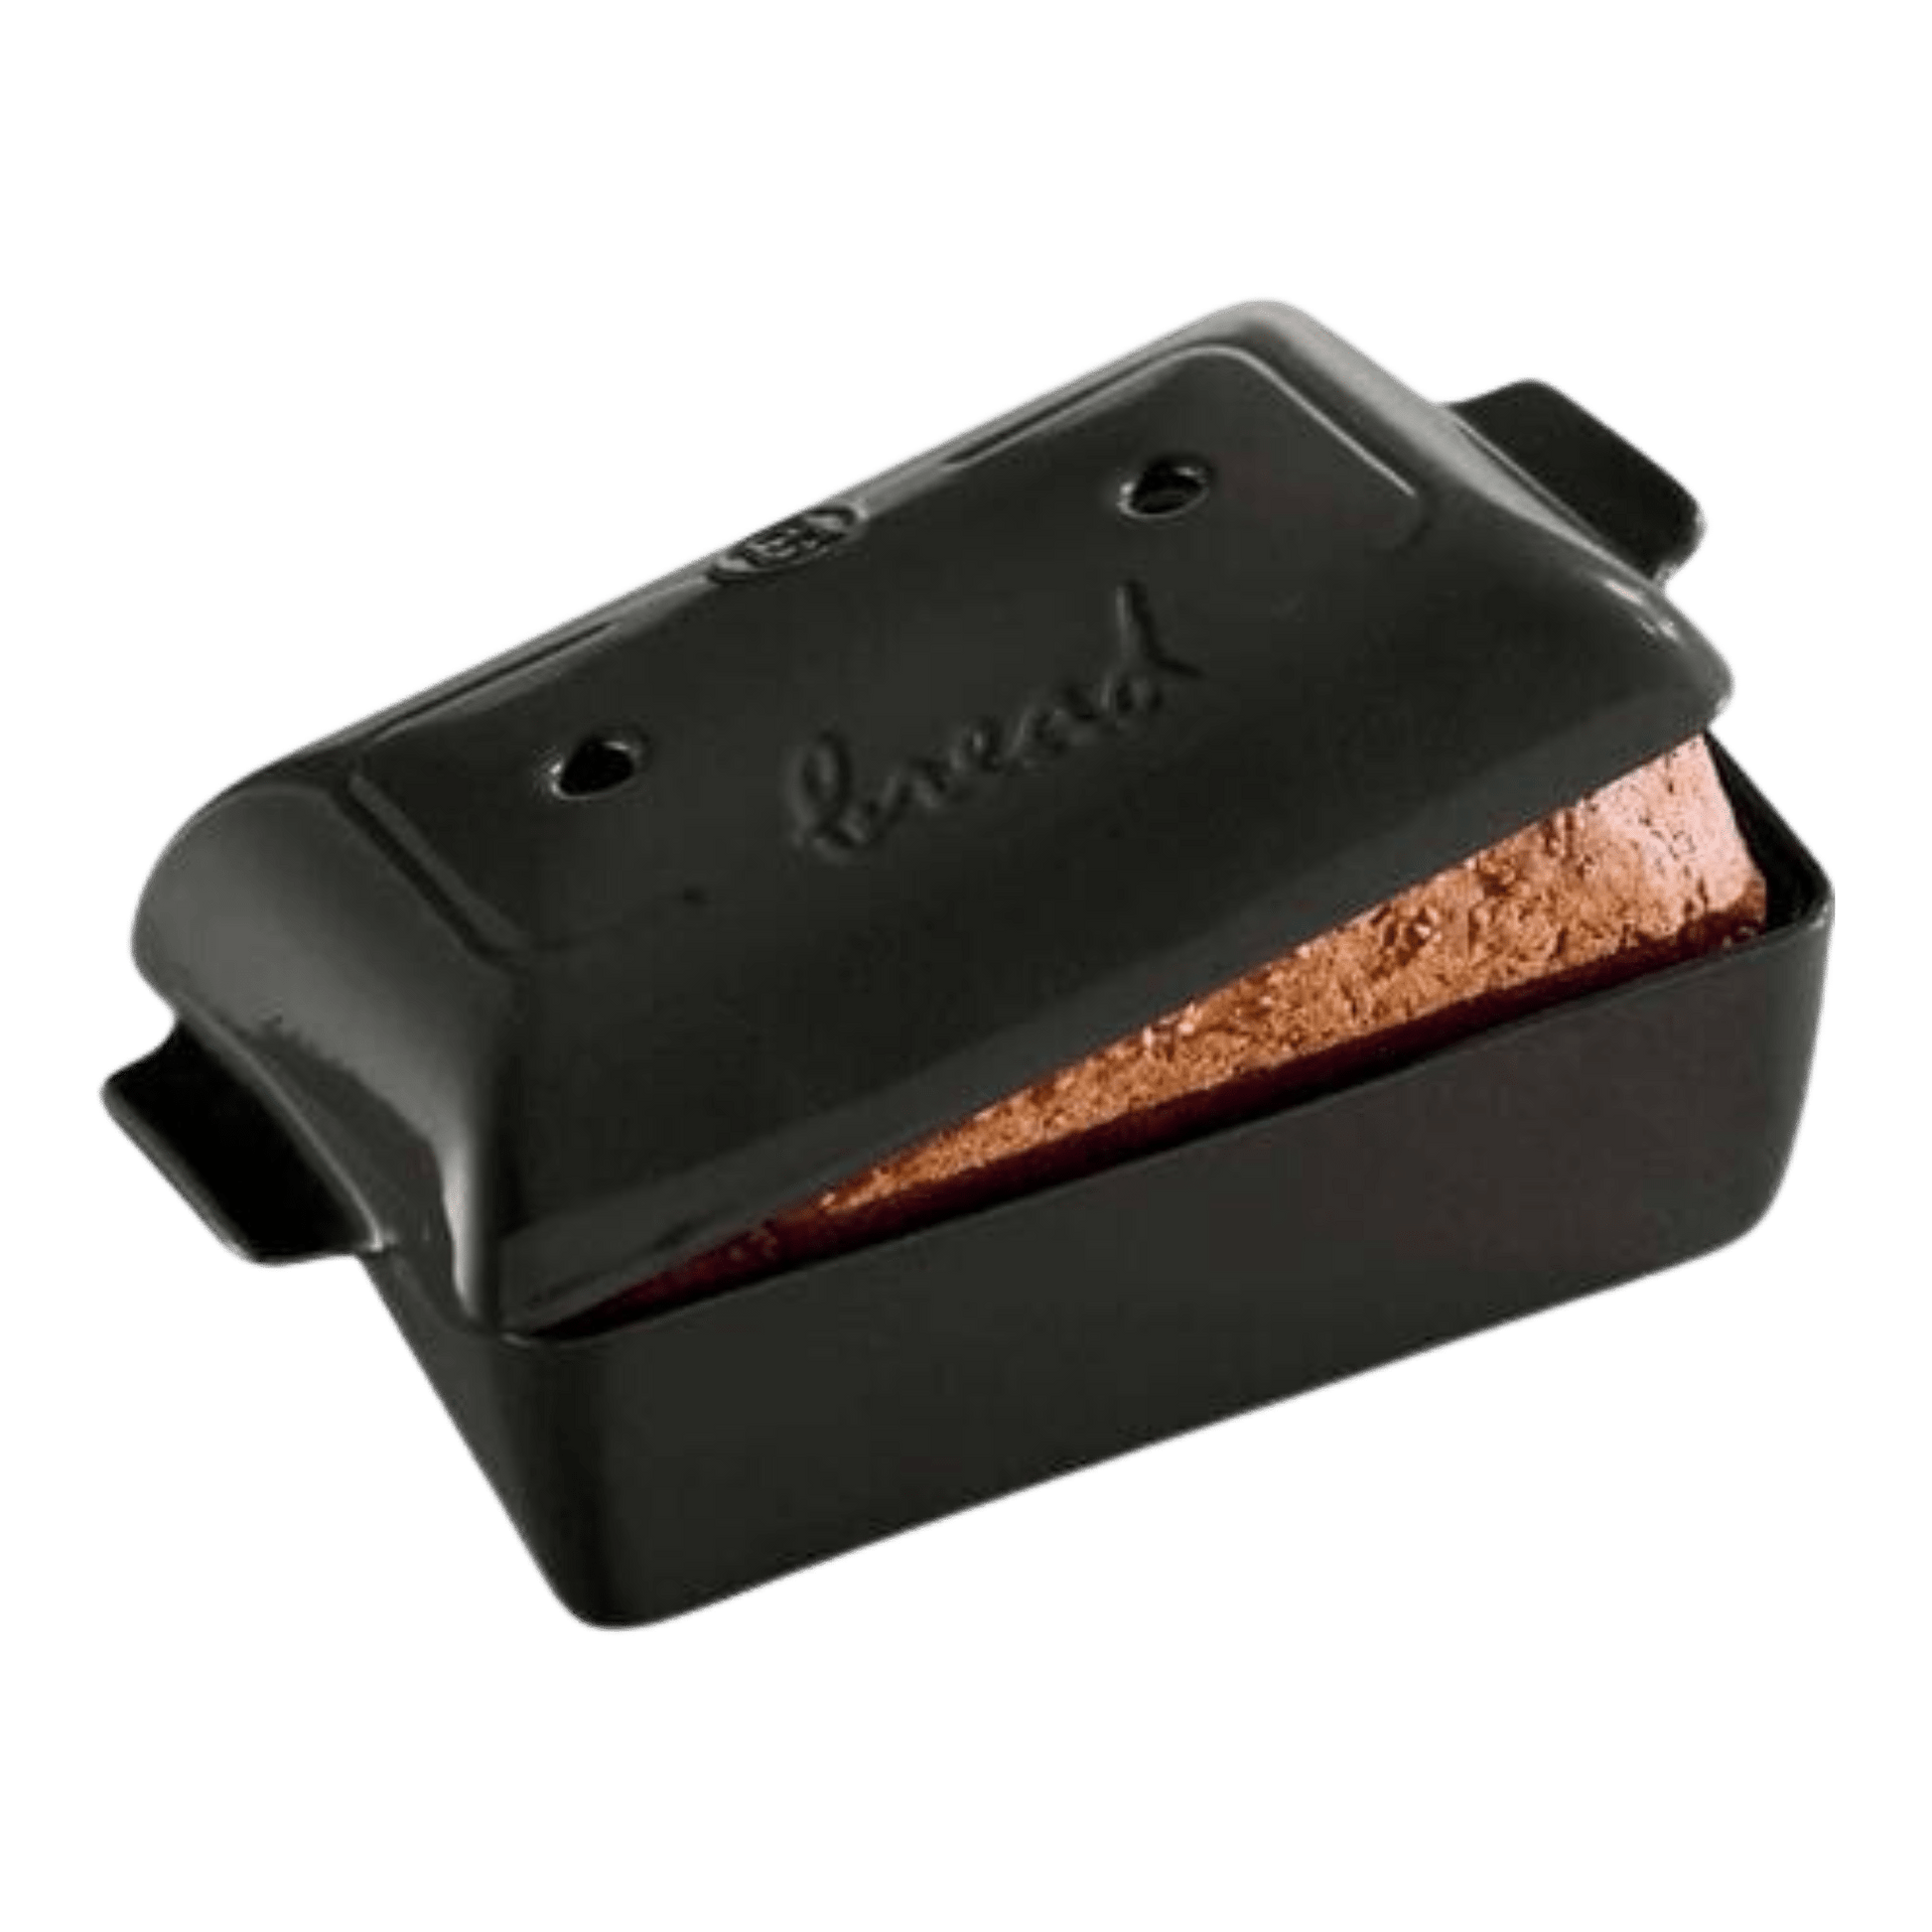 dark grey bread loaf baker with baked loaf inside and lid set askew on it.